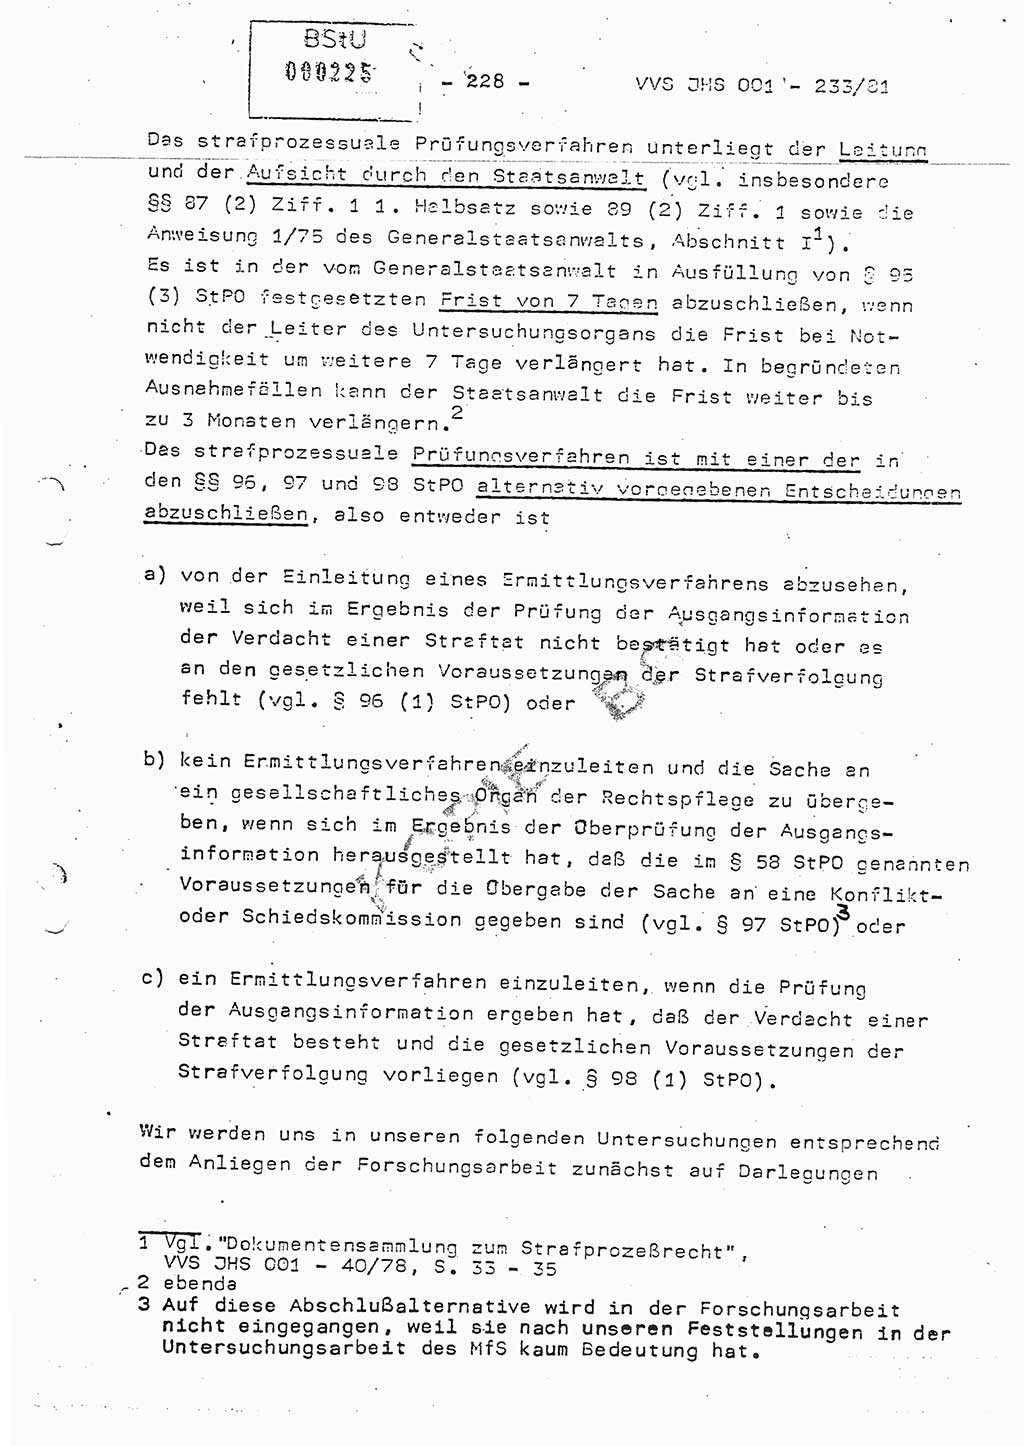 Dissertation Oberstleutnant Horst Zank (JHS), Oberstleutnant Dr. Karl-Heinz Knoblauch (JHS), Oberstleutnant Gustav-Adolf Kowalewski (HA Ⅸ), Oberstleutnant Wolfgang Plötner (HA Ⅸ), Ministerium für Staatssicherheit (MfS) [Deutsche Demokratische Republik (DDR)], Juristische Hochschule (JHS), Vertrauliche Verschlußsache (VVS) o001-233/81, Potsdam 1981, Blatt 228 (Diss. MfS DDR JHS VVS o001-233/81 1981, Bl. 228)